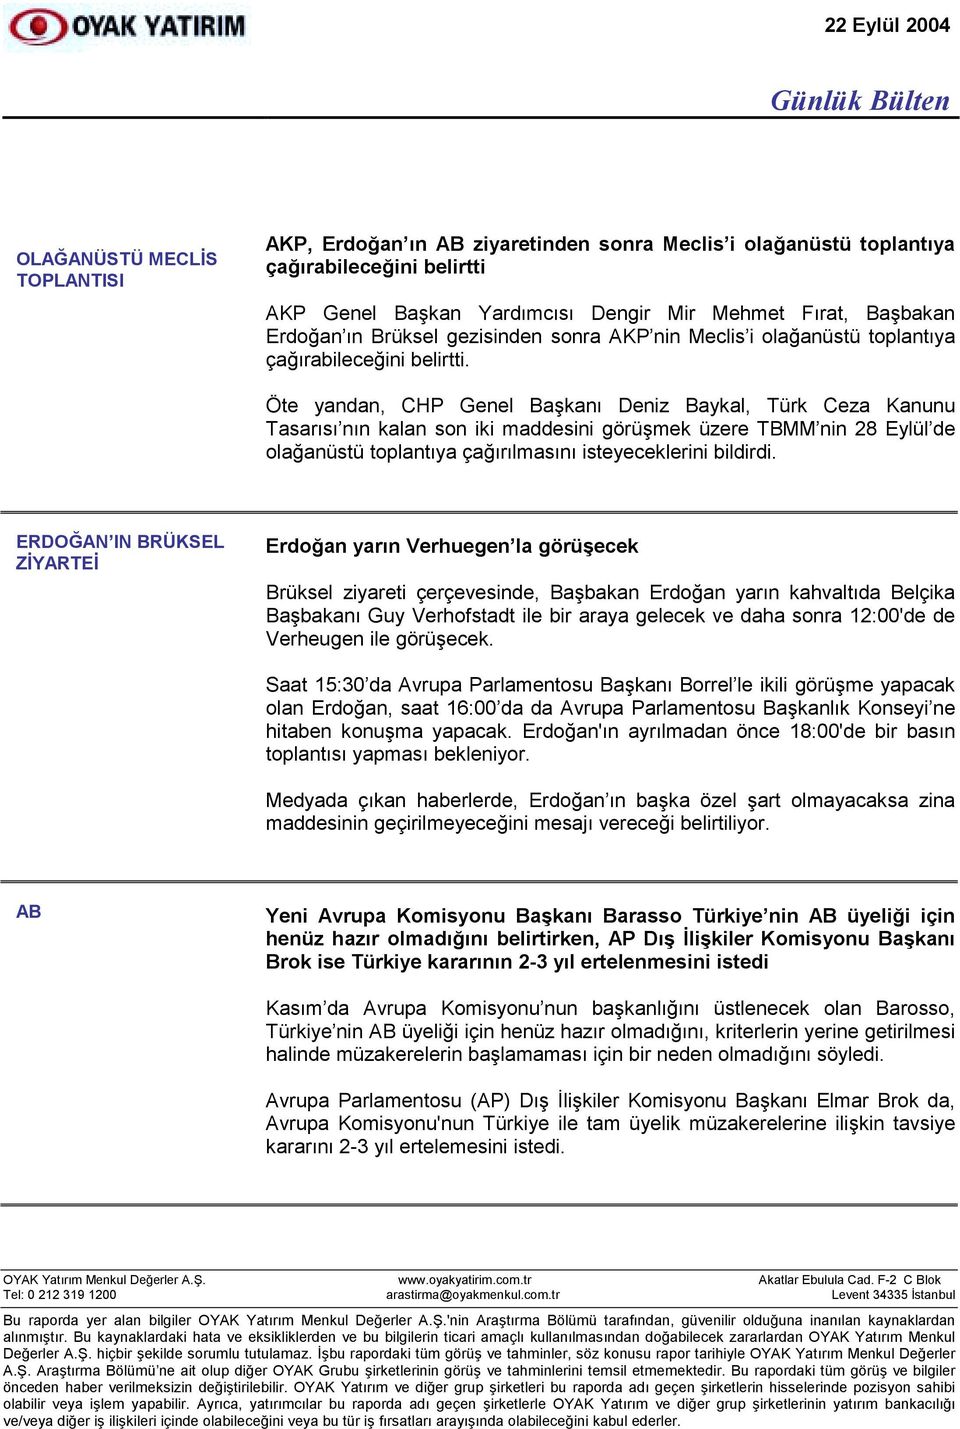 Öte yandan, CHP Genel Başkanõ Deniz Baykal, Türk Ceza Kanunu Tasarõsõ nõn kalan son iki maddesini görüşmek üzere TBMM nin 28 Eylül de olağanüstü toplantõya çağõrõlmasõnõ isteyeceklerini bildirdi.